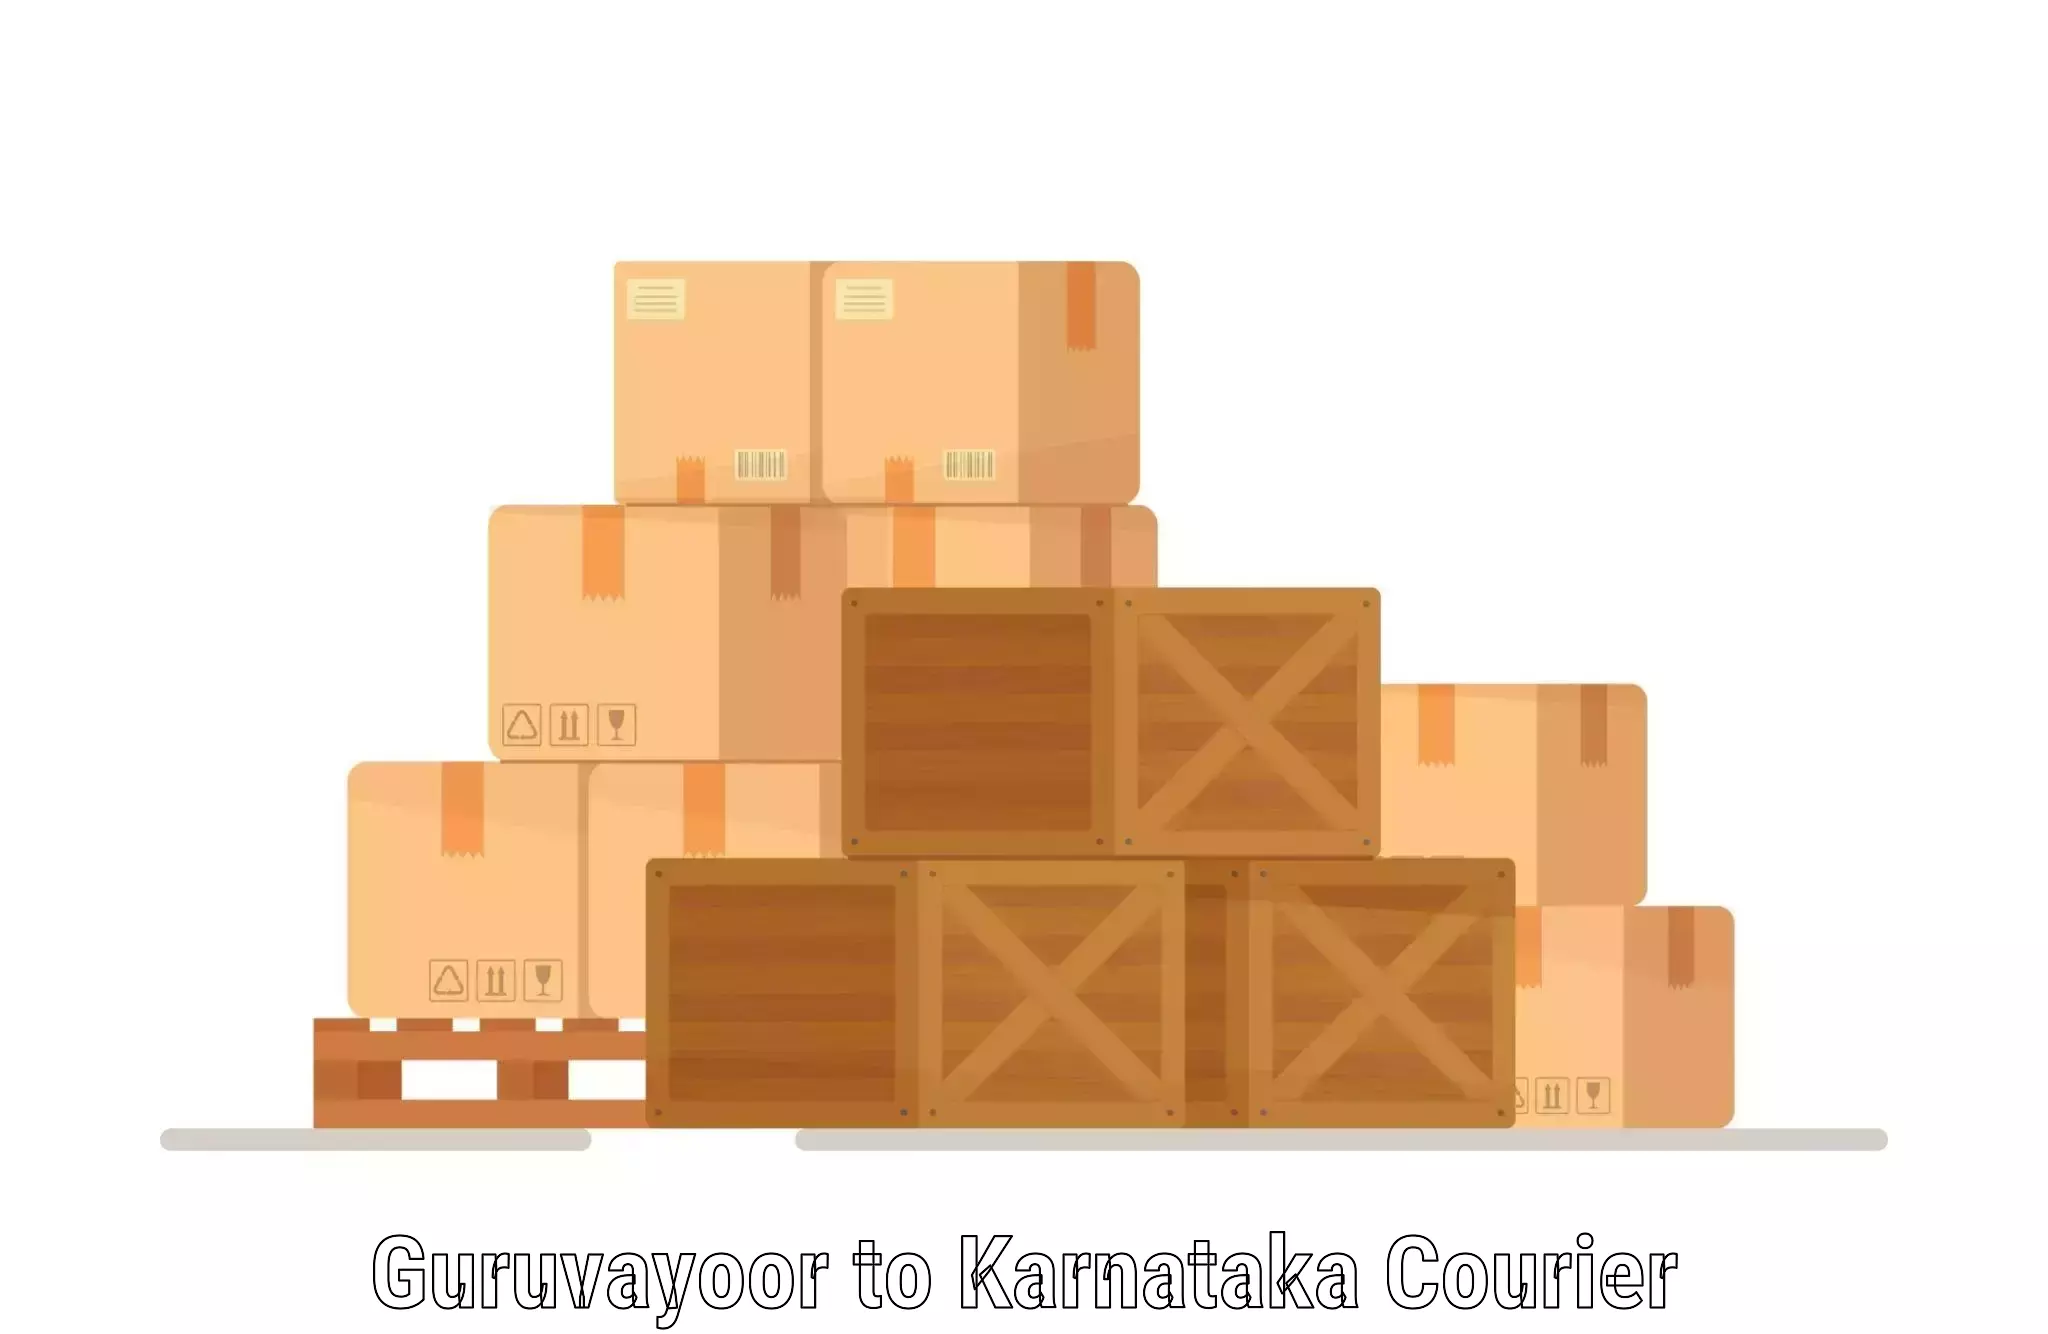 Seamless shipping experience Guruvayoor to Bangalore